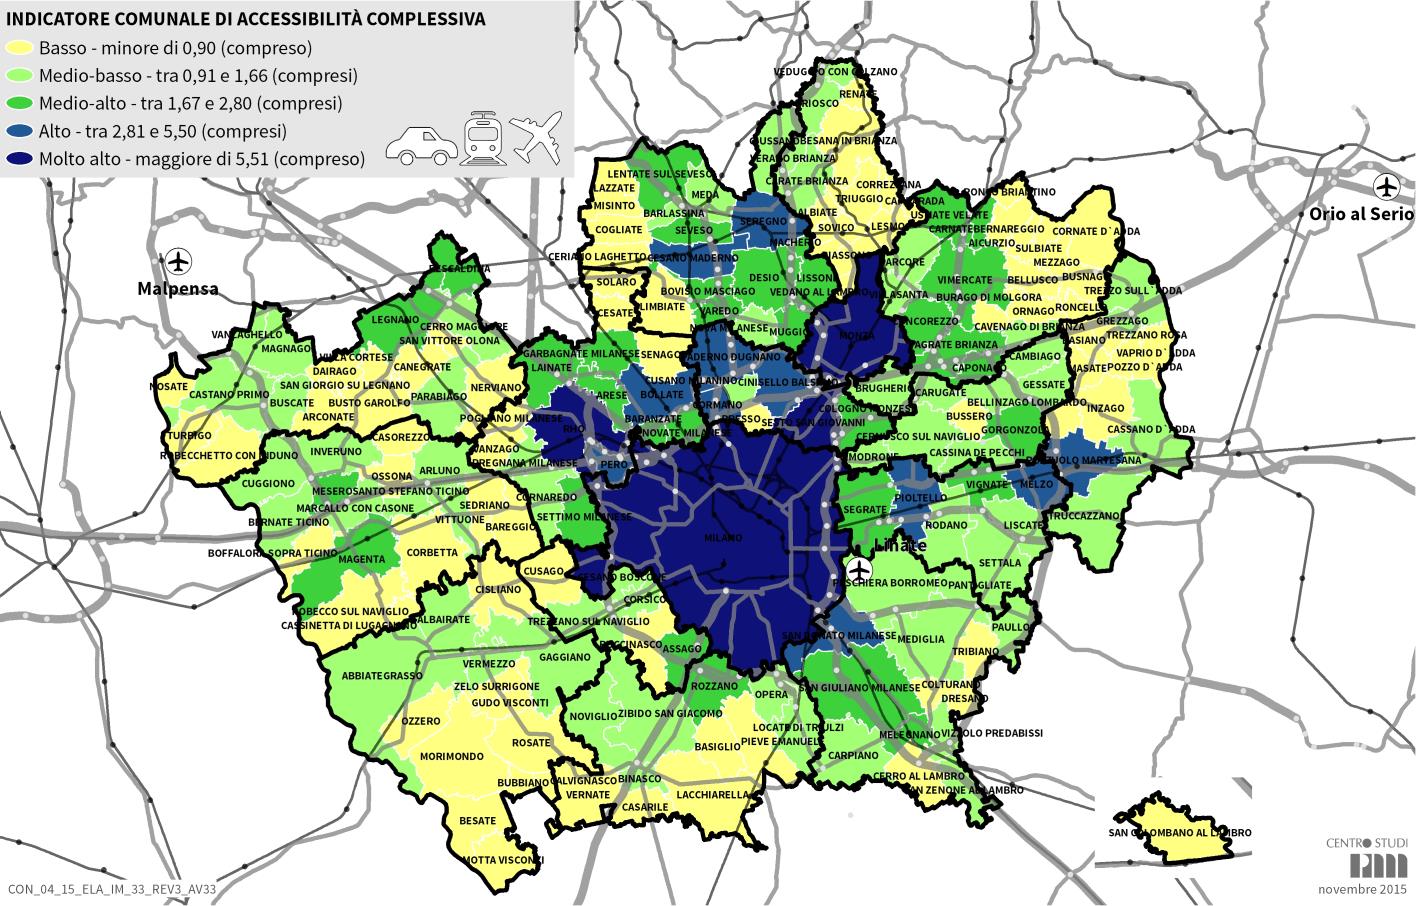 Figura 2 Distribuzione territoriale degli indicatori comunali di accessibilità complessiva Comuni con condizioni di accessibilità migliori Indicatore di accessibilità ALTO 8% del totale * Milano.